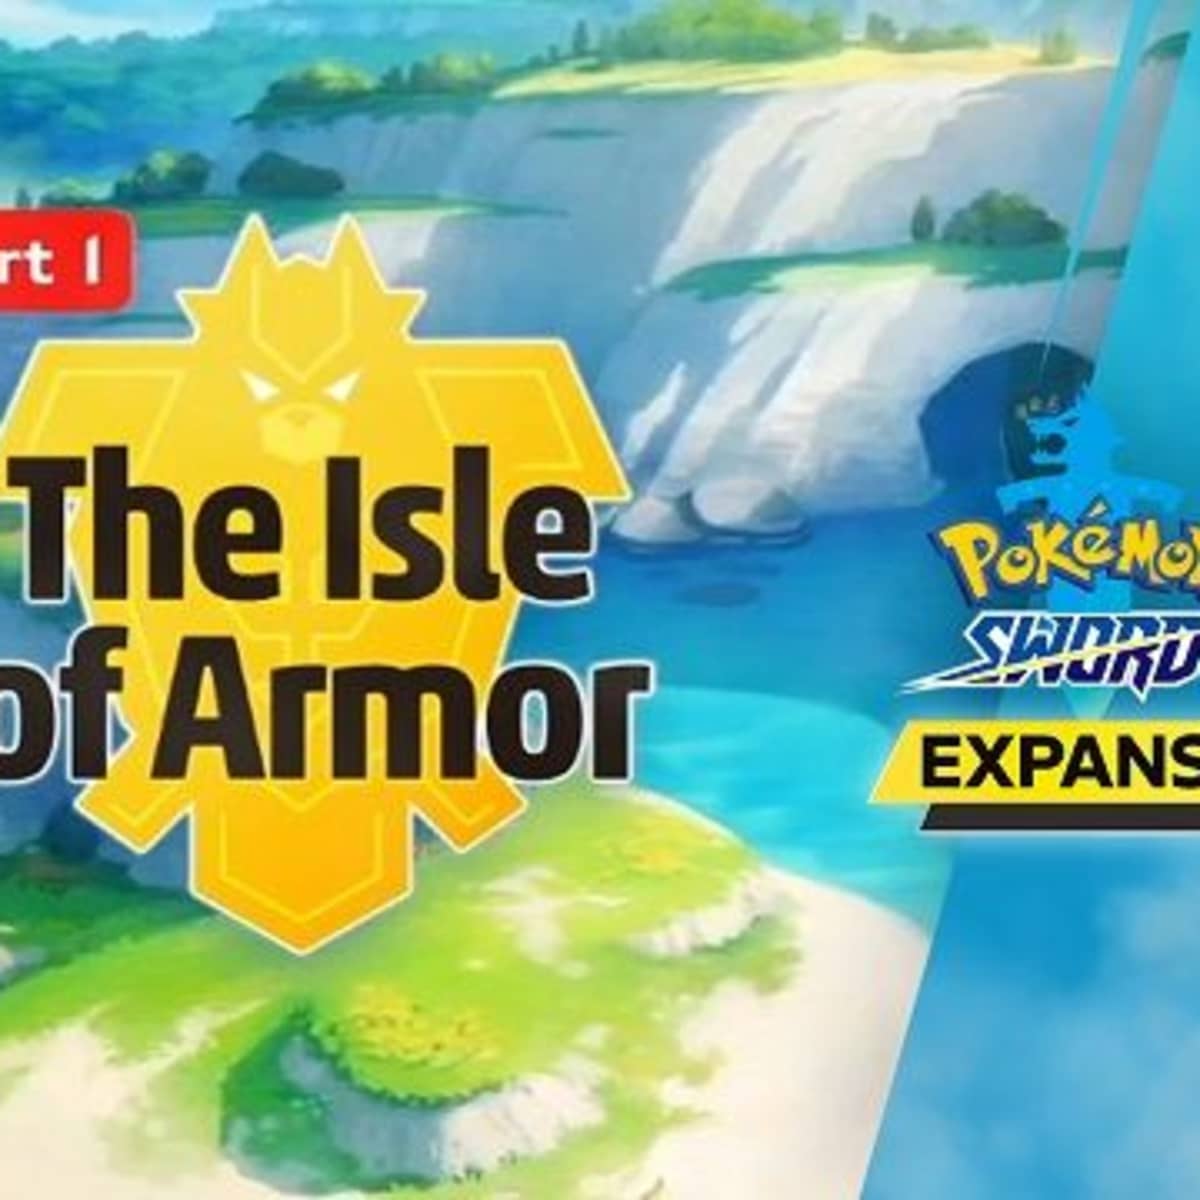 Isle of Armor, a parte 1 do DLC de Pokémon Sword e Shield, vale a pena?